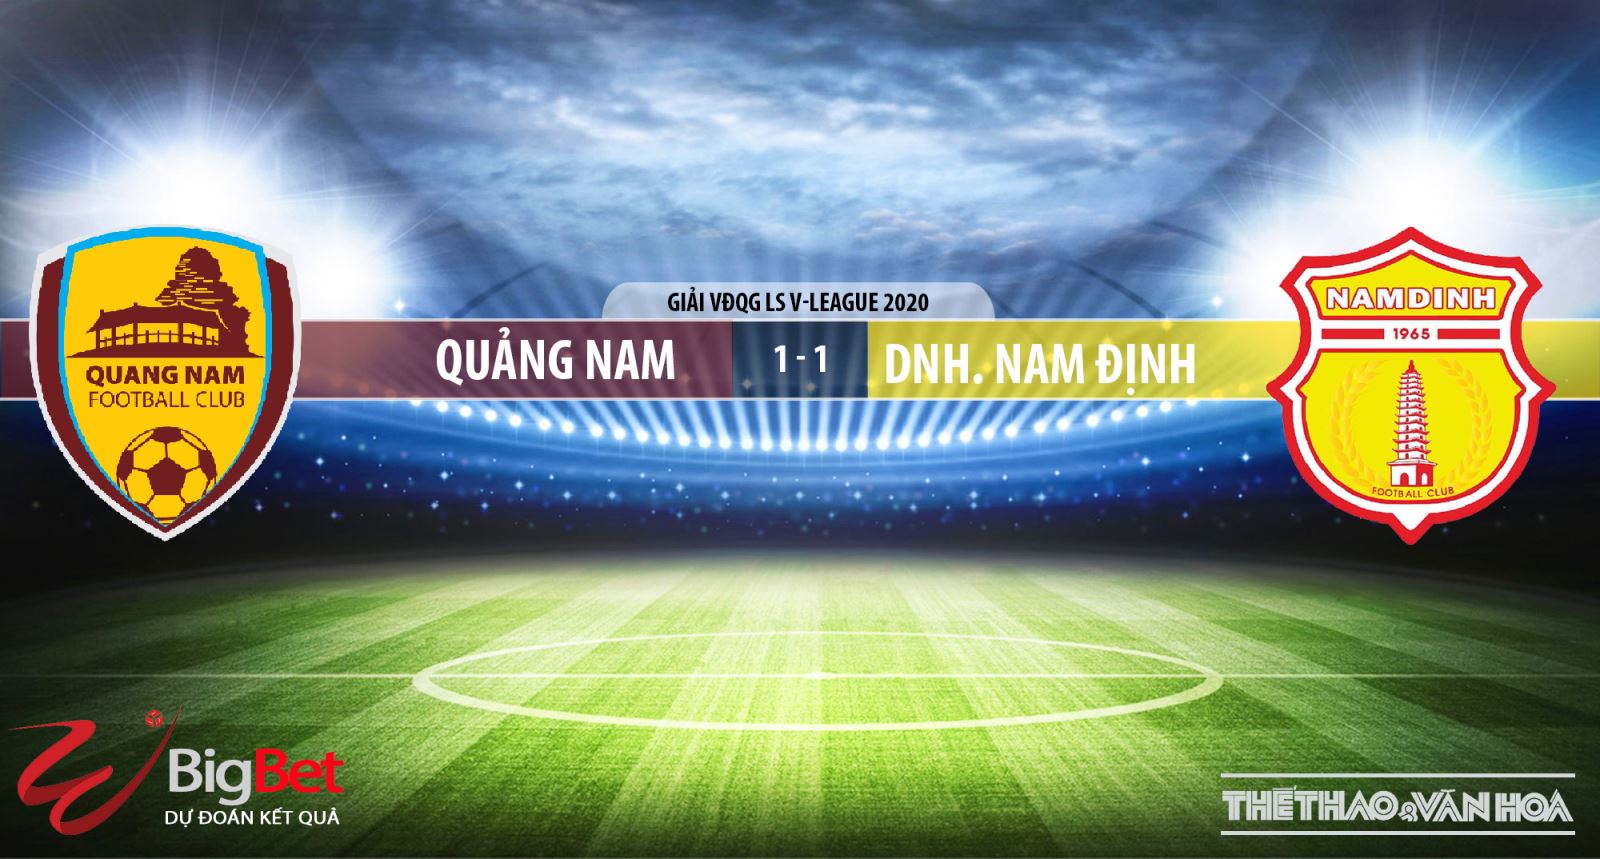 Keo nha cai, nhận định kết quả, Quảng Nam vs Nam Định, trực tiếp bóng đá, trực tiếp V-League 2020, nhận định bóng đá nhà cái, nhận định bóng đá Quảng Nam đấu với Nam Định, kèo bóng đá, TTTV